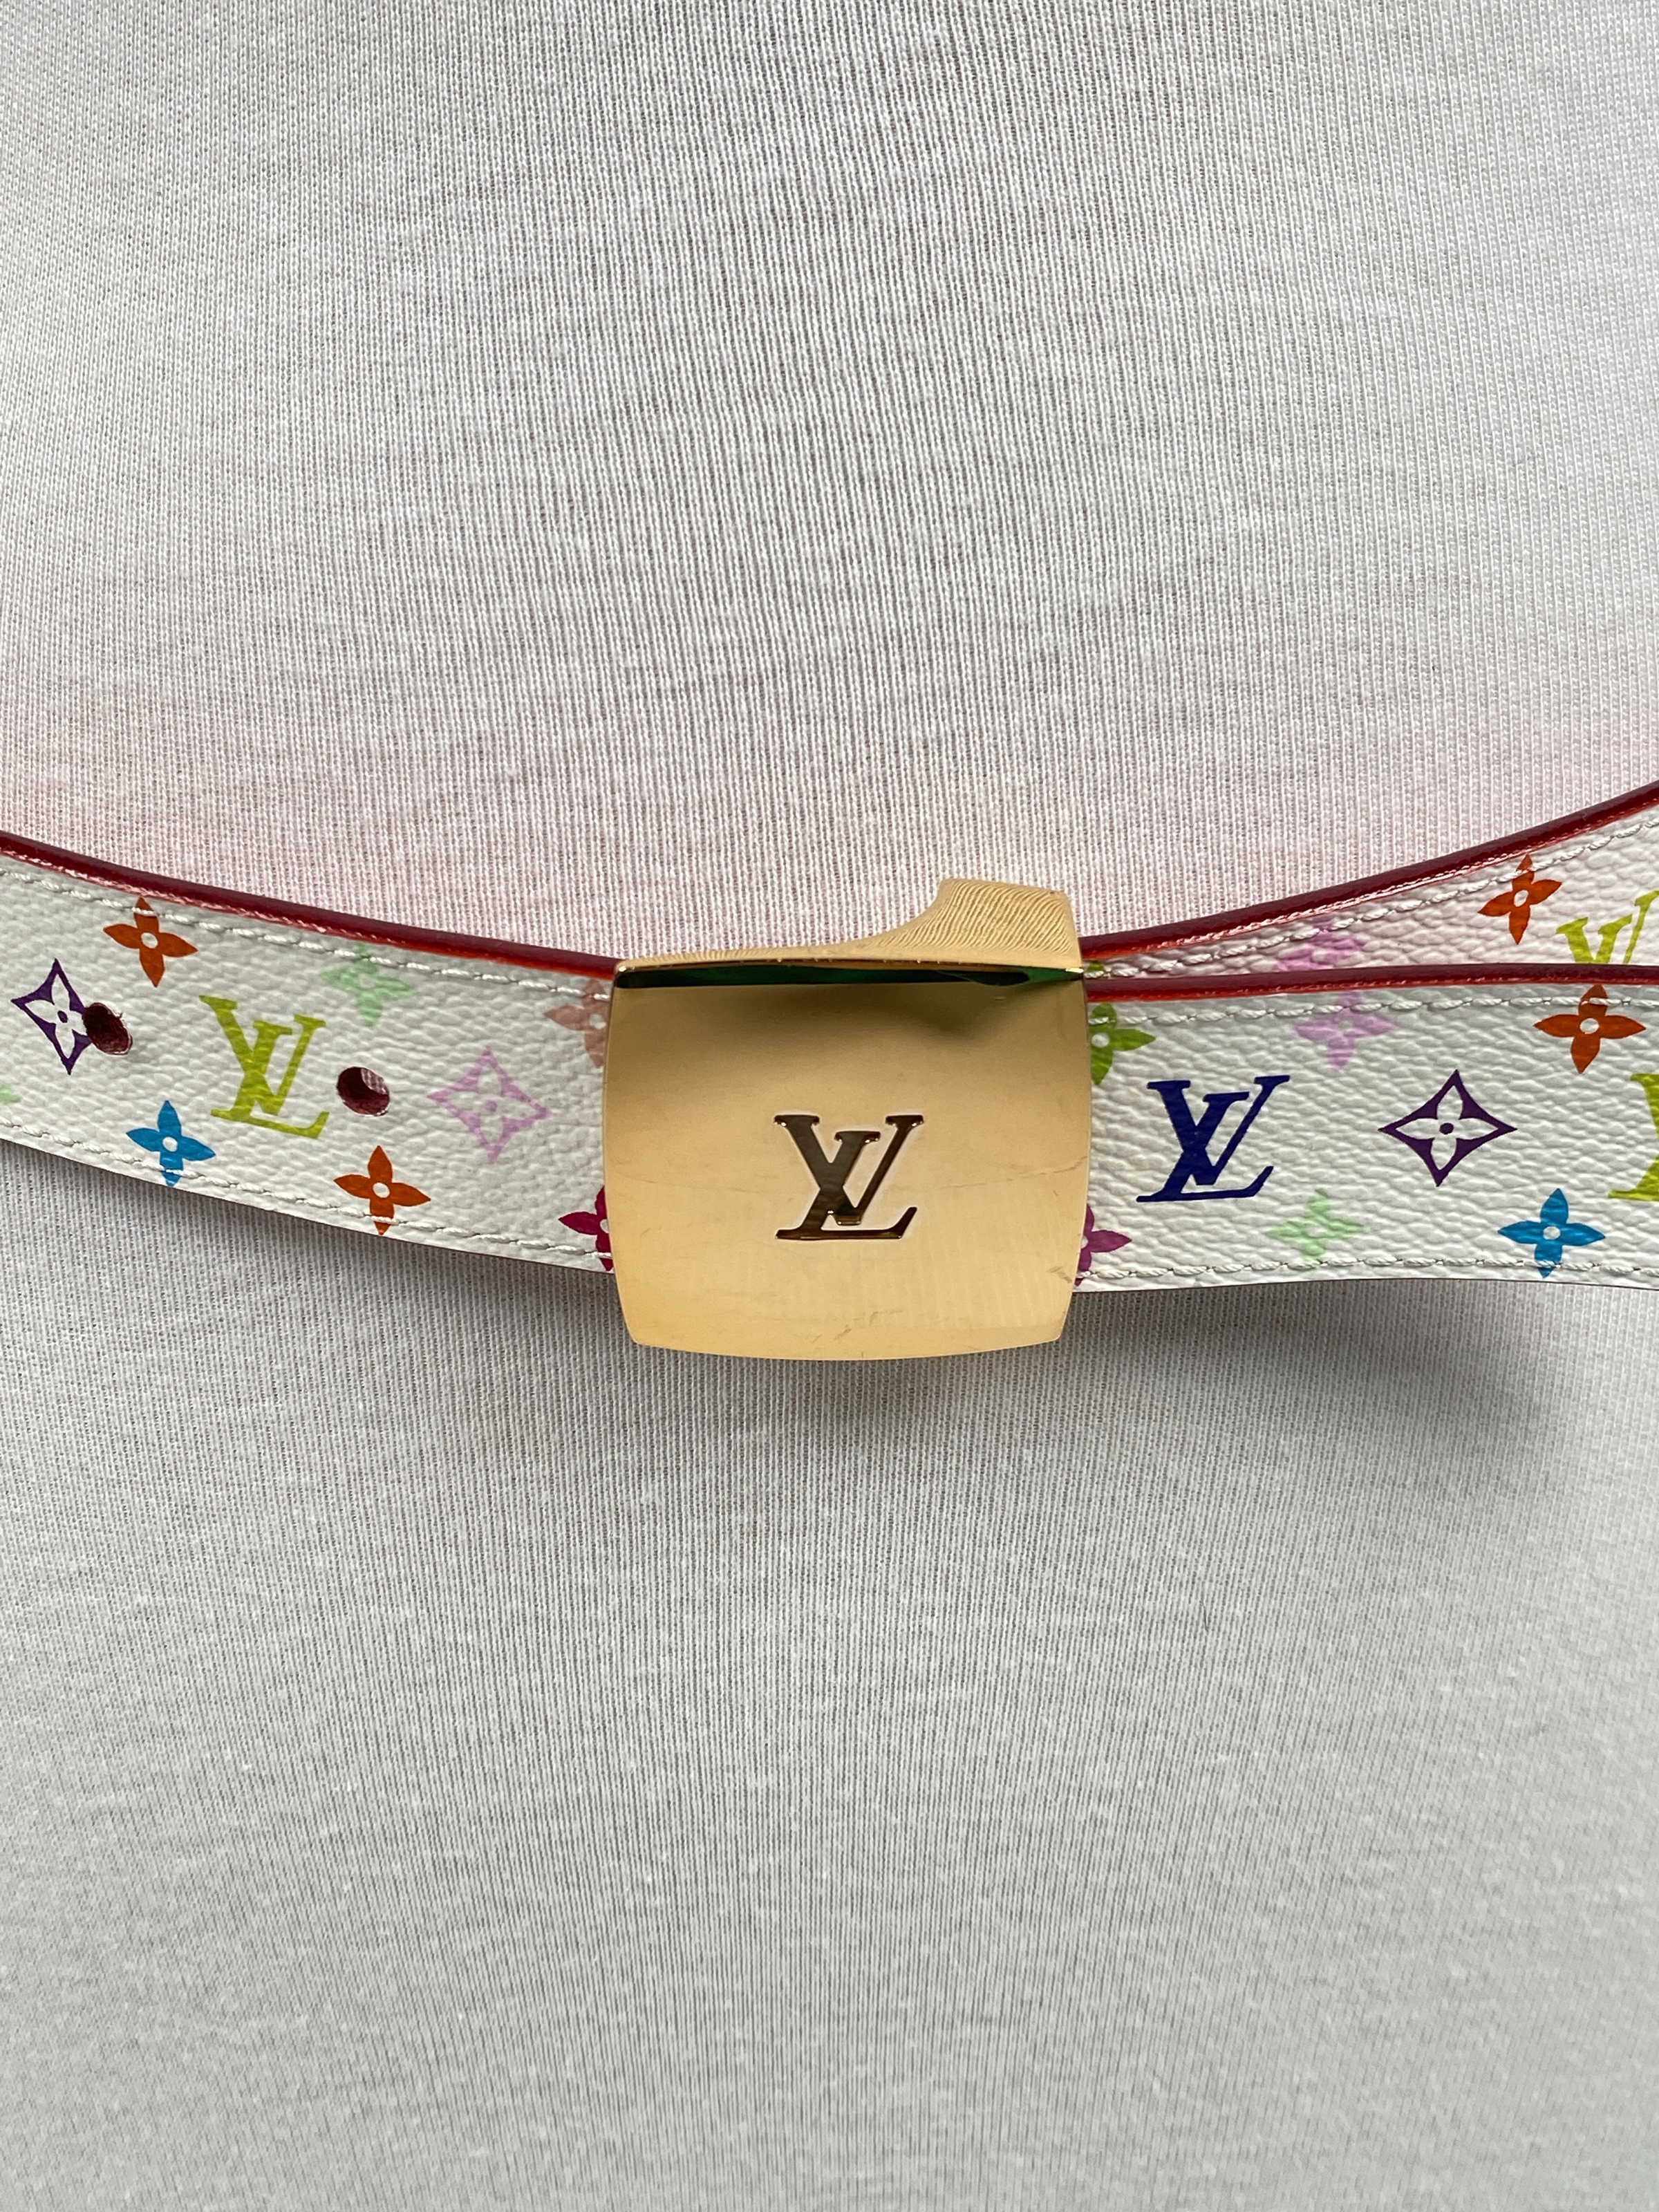 Louis Vuitton White Multicolor Belt 75cm - THE PURSE AFFAIR